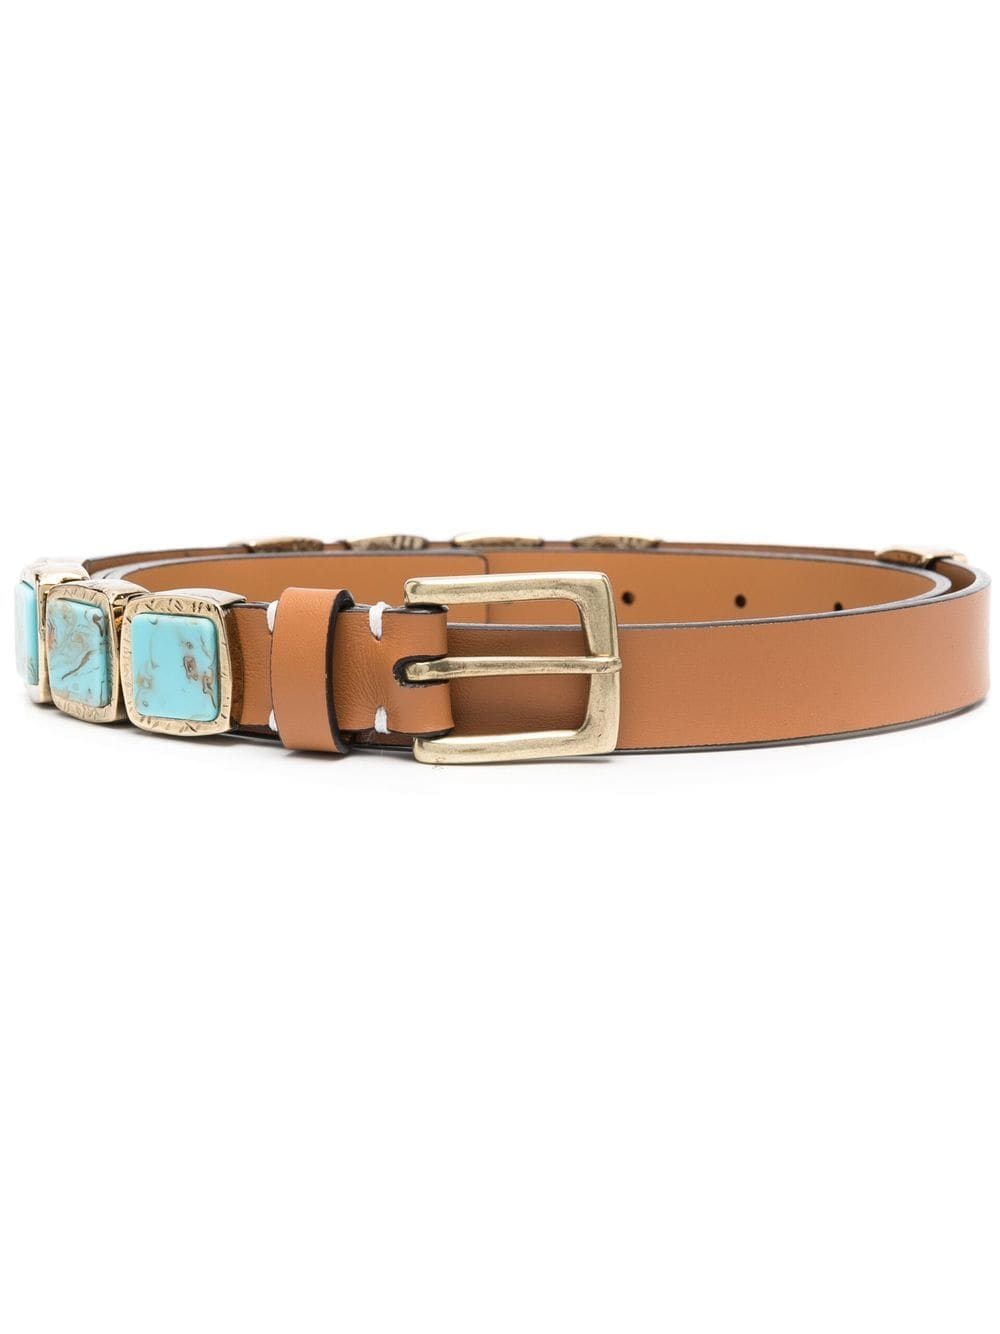 Crystal-embellished adjustable belt, Belts, Women's